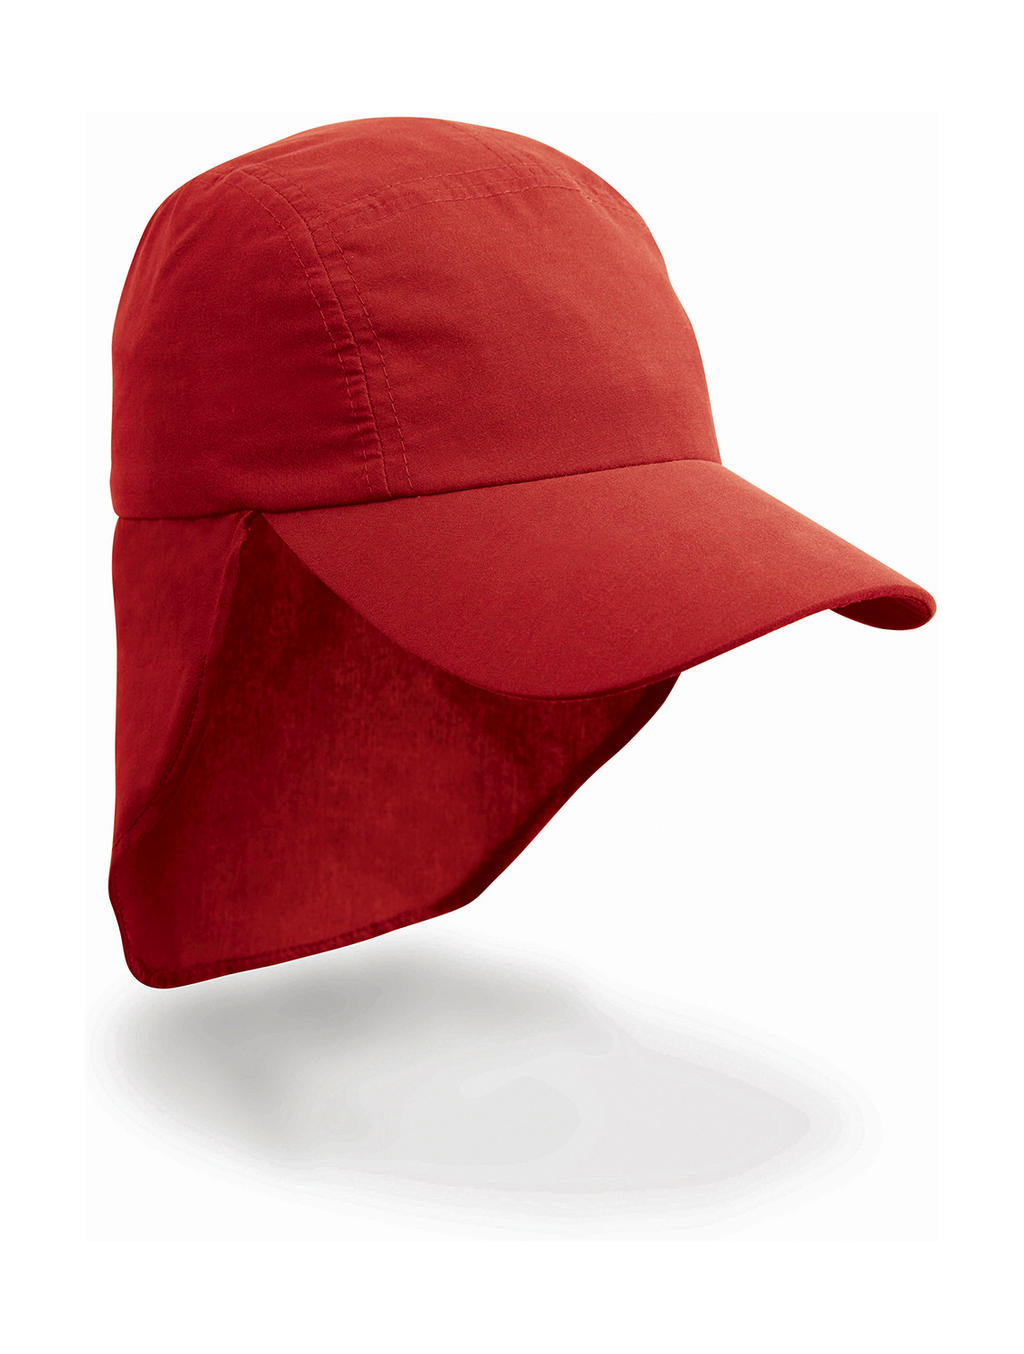  Junior Ulti Legionnaire Cap in Farbe Red